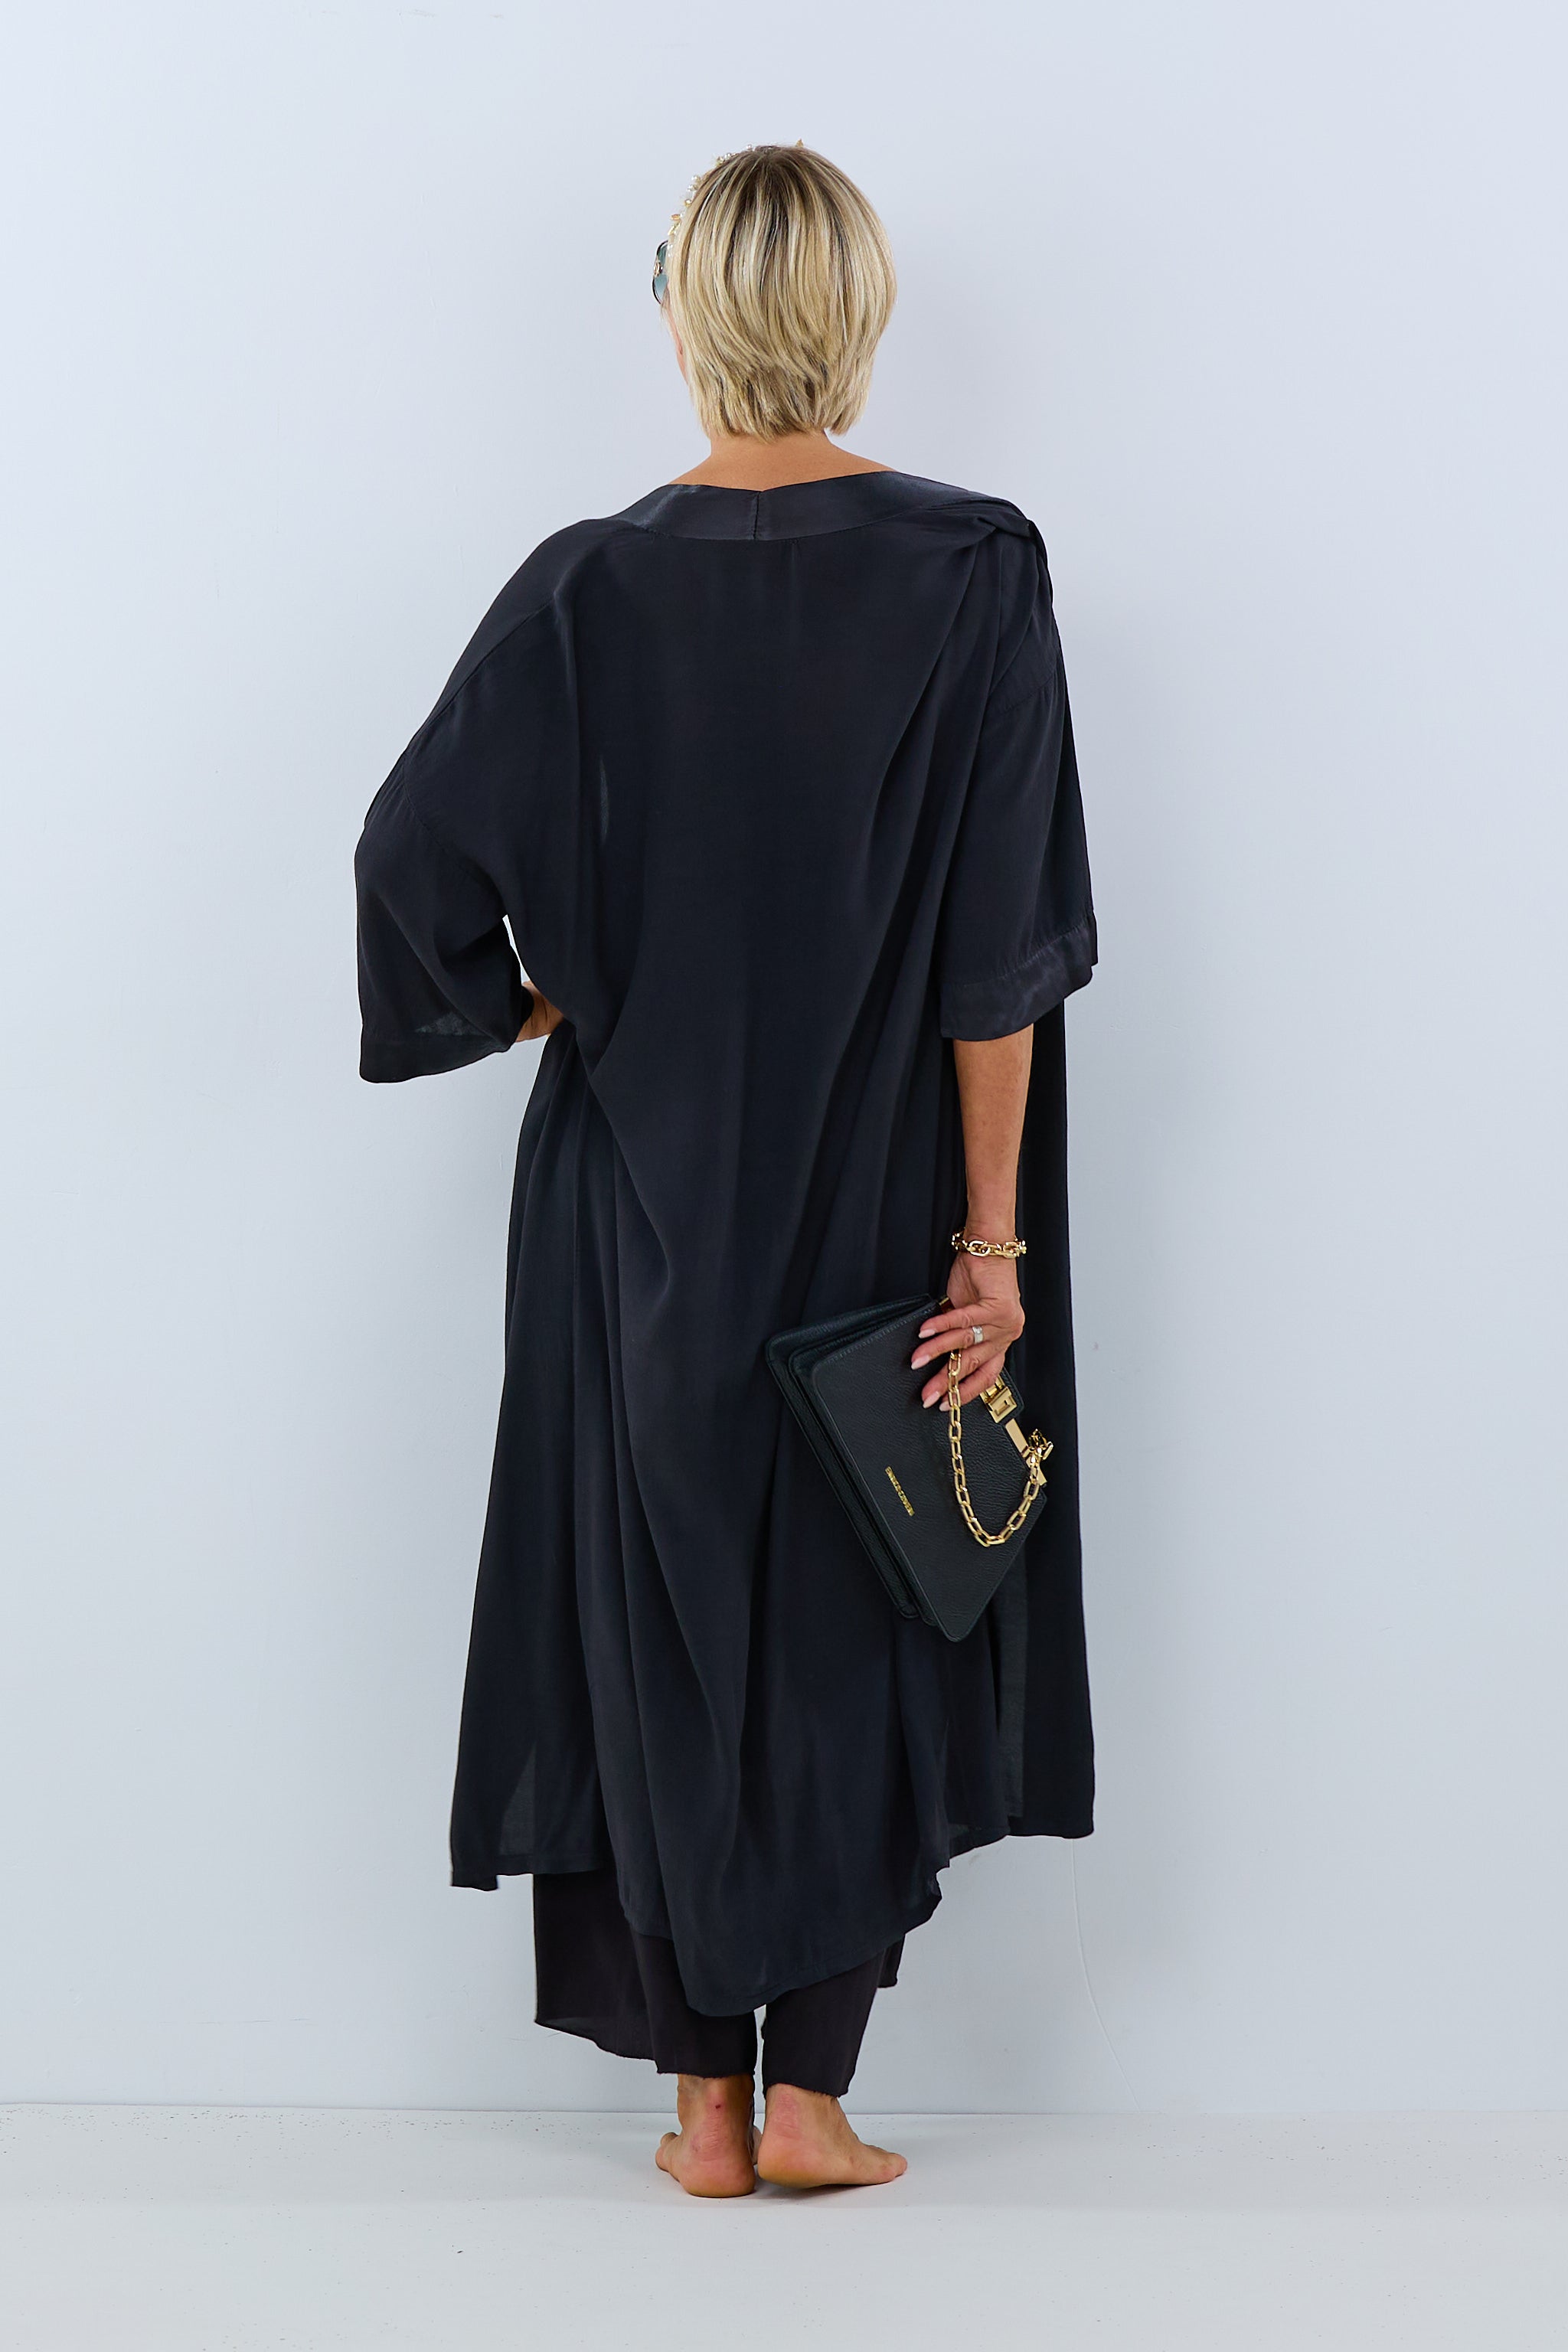 Damen Kimono schwarz Trends & Lifestyle Deutschland Gmbh